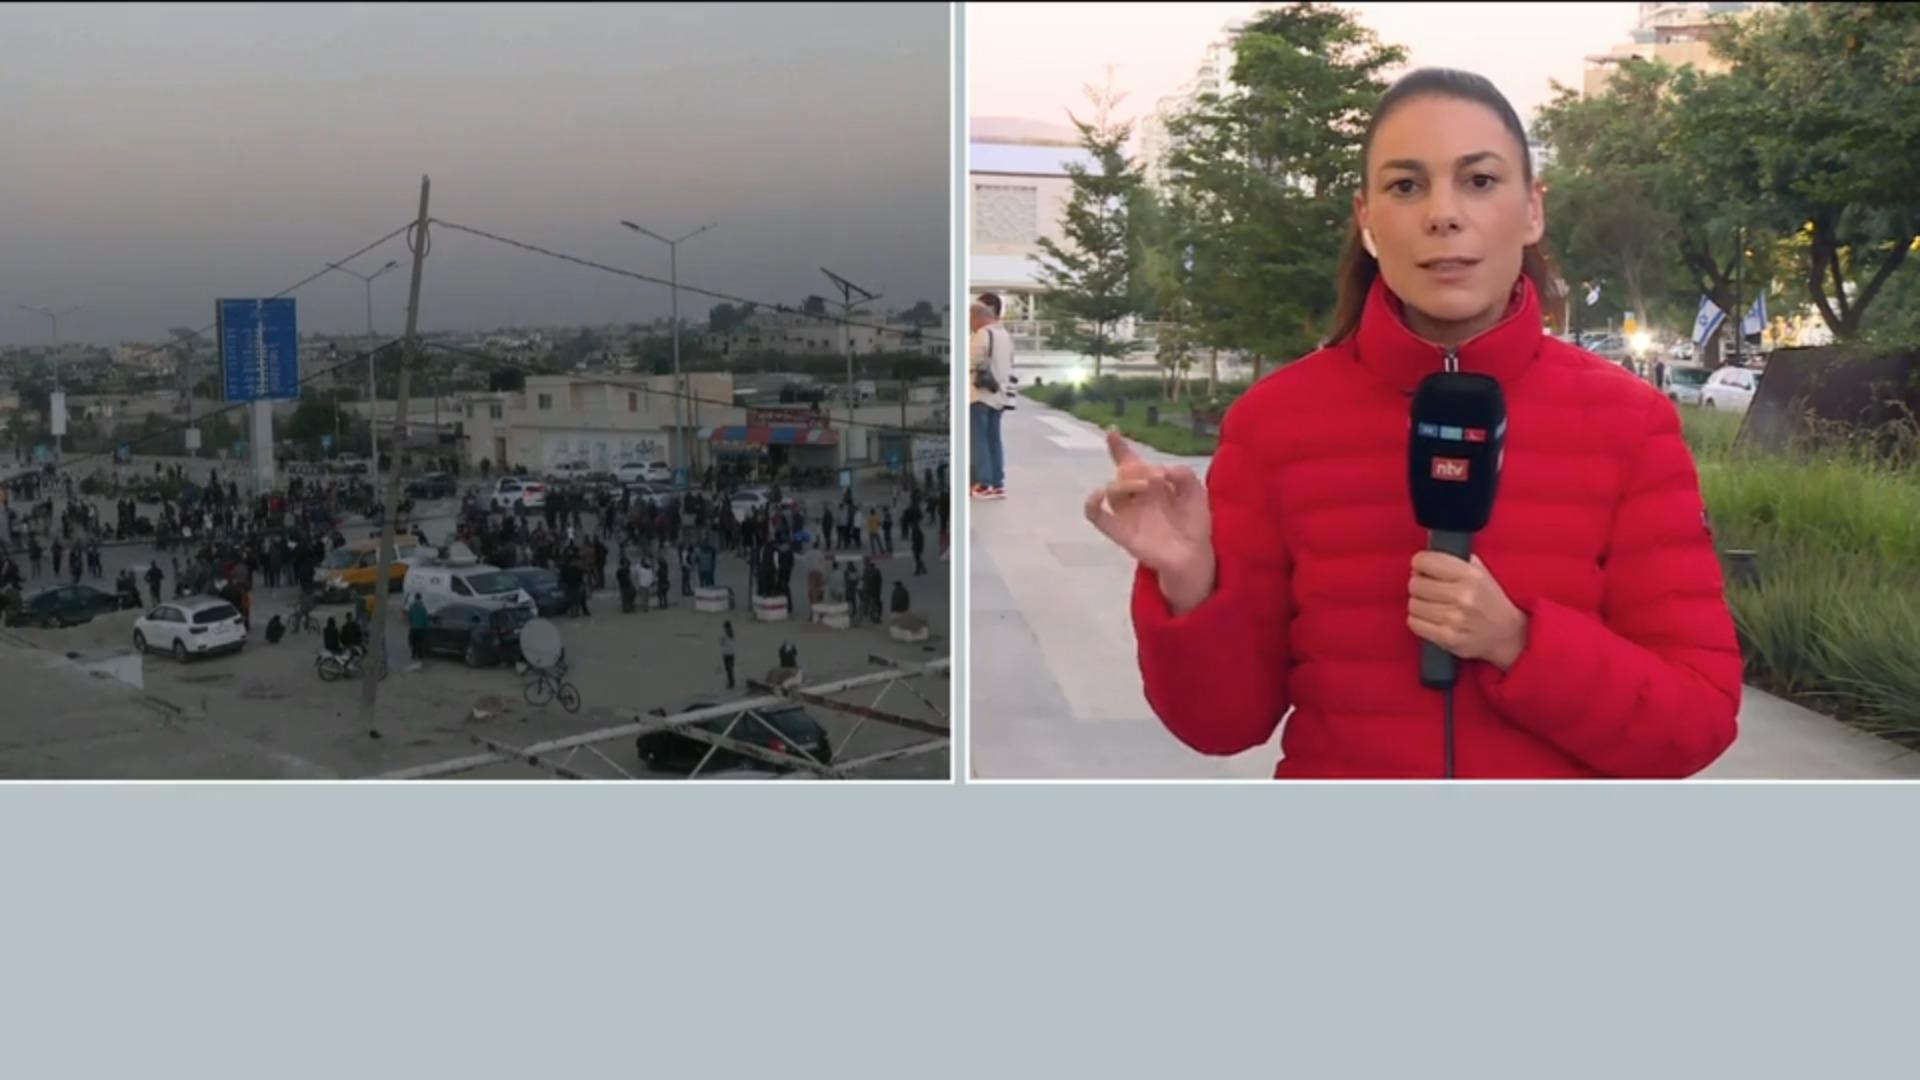 "Alle warten sehnsüchtig auf den ersten Anruf" Rachel Blufarb über Hamas-Geiseln